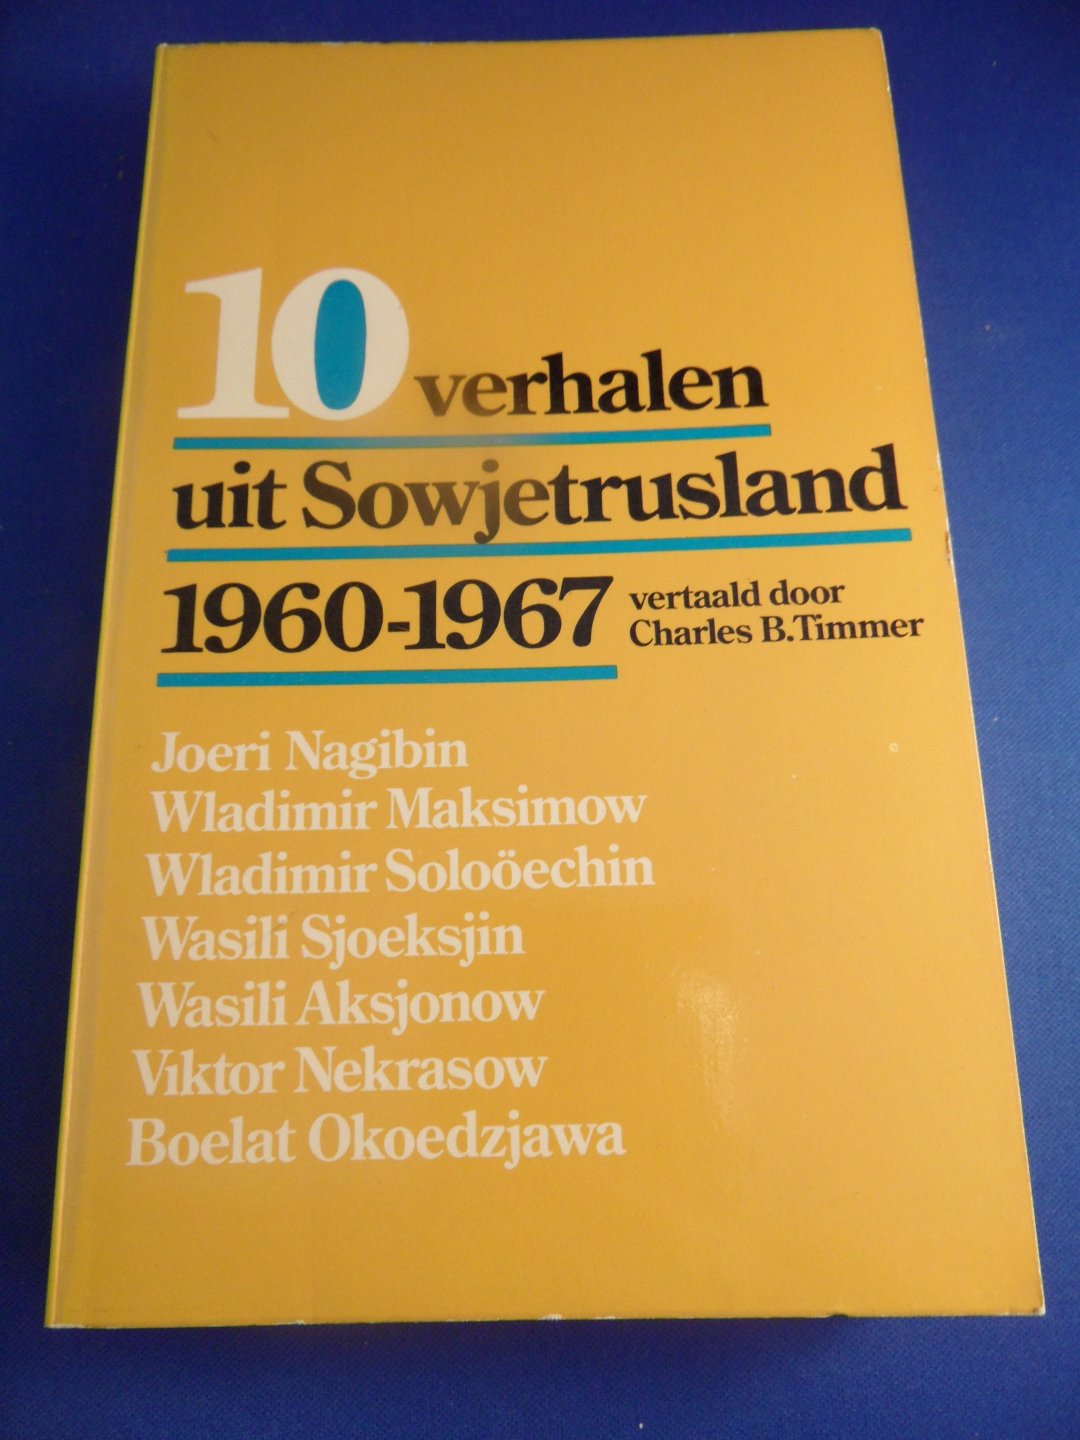  - 10 verhalen uit Sowjetrusland 1960-1967